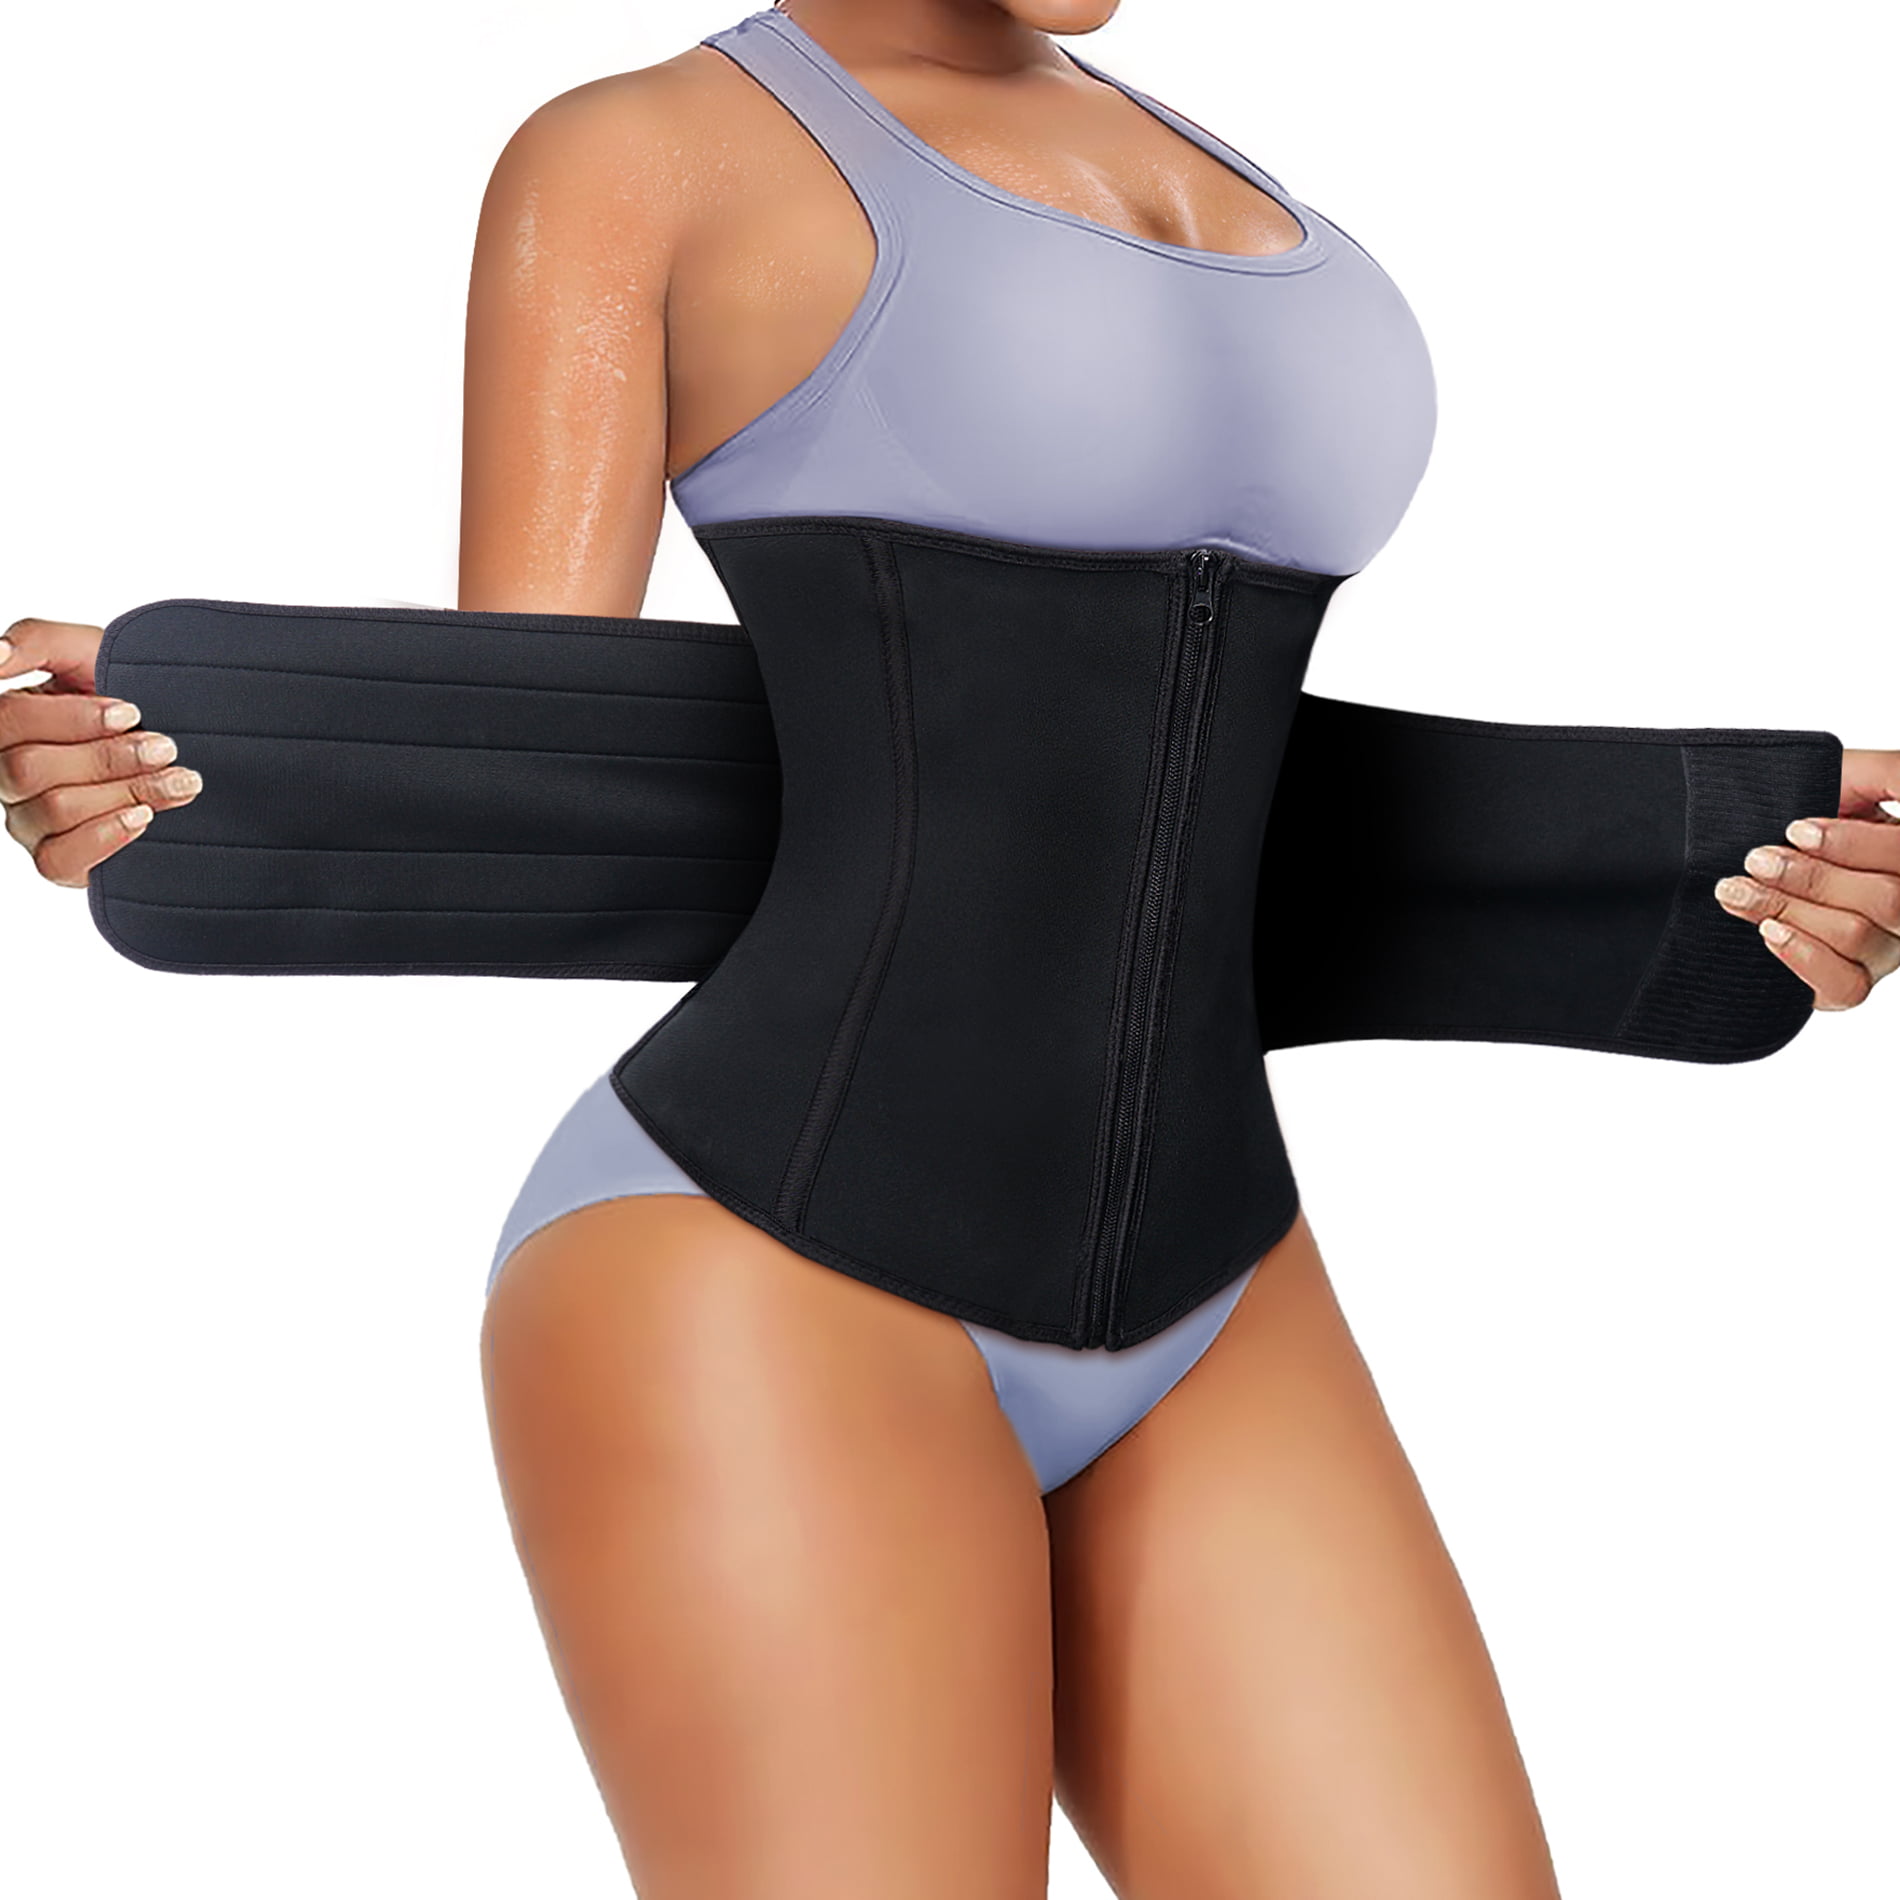 Waist Trainer Neoprene Belt Sweat Body Shaper Tummy Control Girdle For Women&Men 